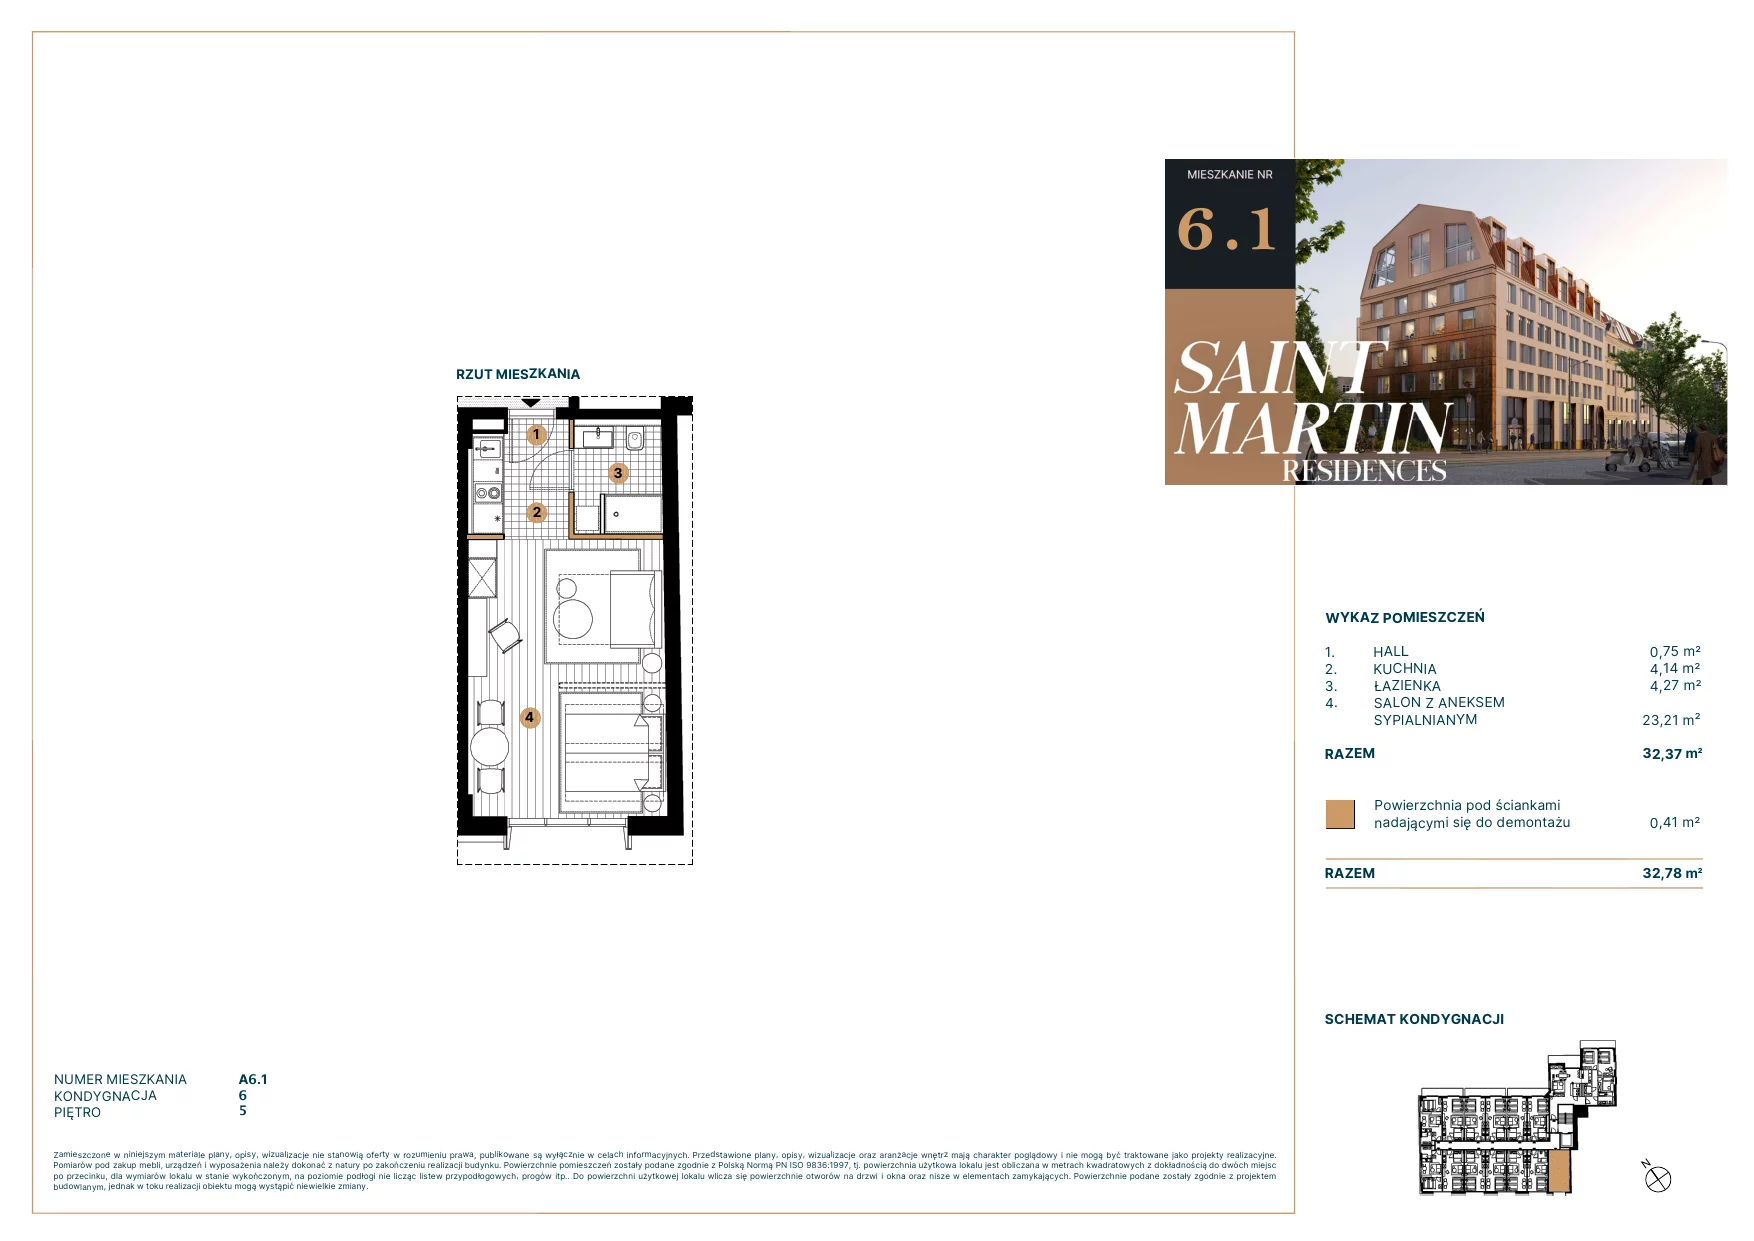 Mieszkanie 34,13 m², piętro 5, oferta nr A6.1, Saint Martin Residences II, Poznań, Stare Miasto, Stare Miasto, ul. Podgórna 7